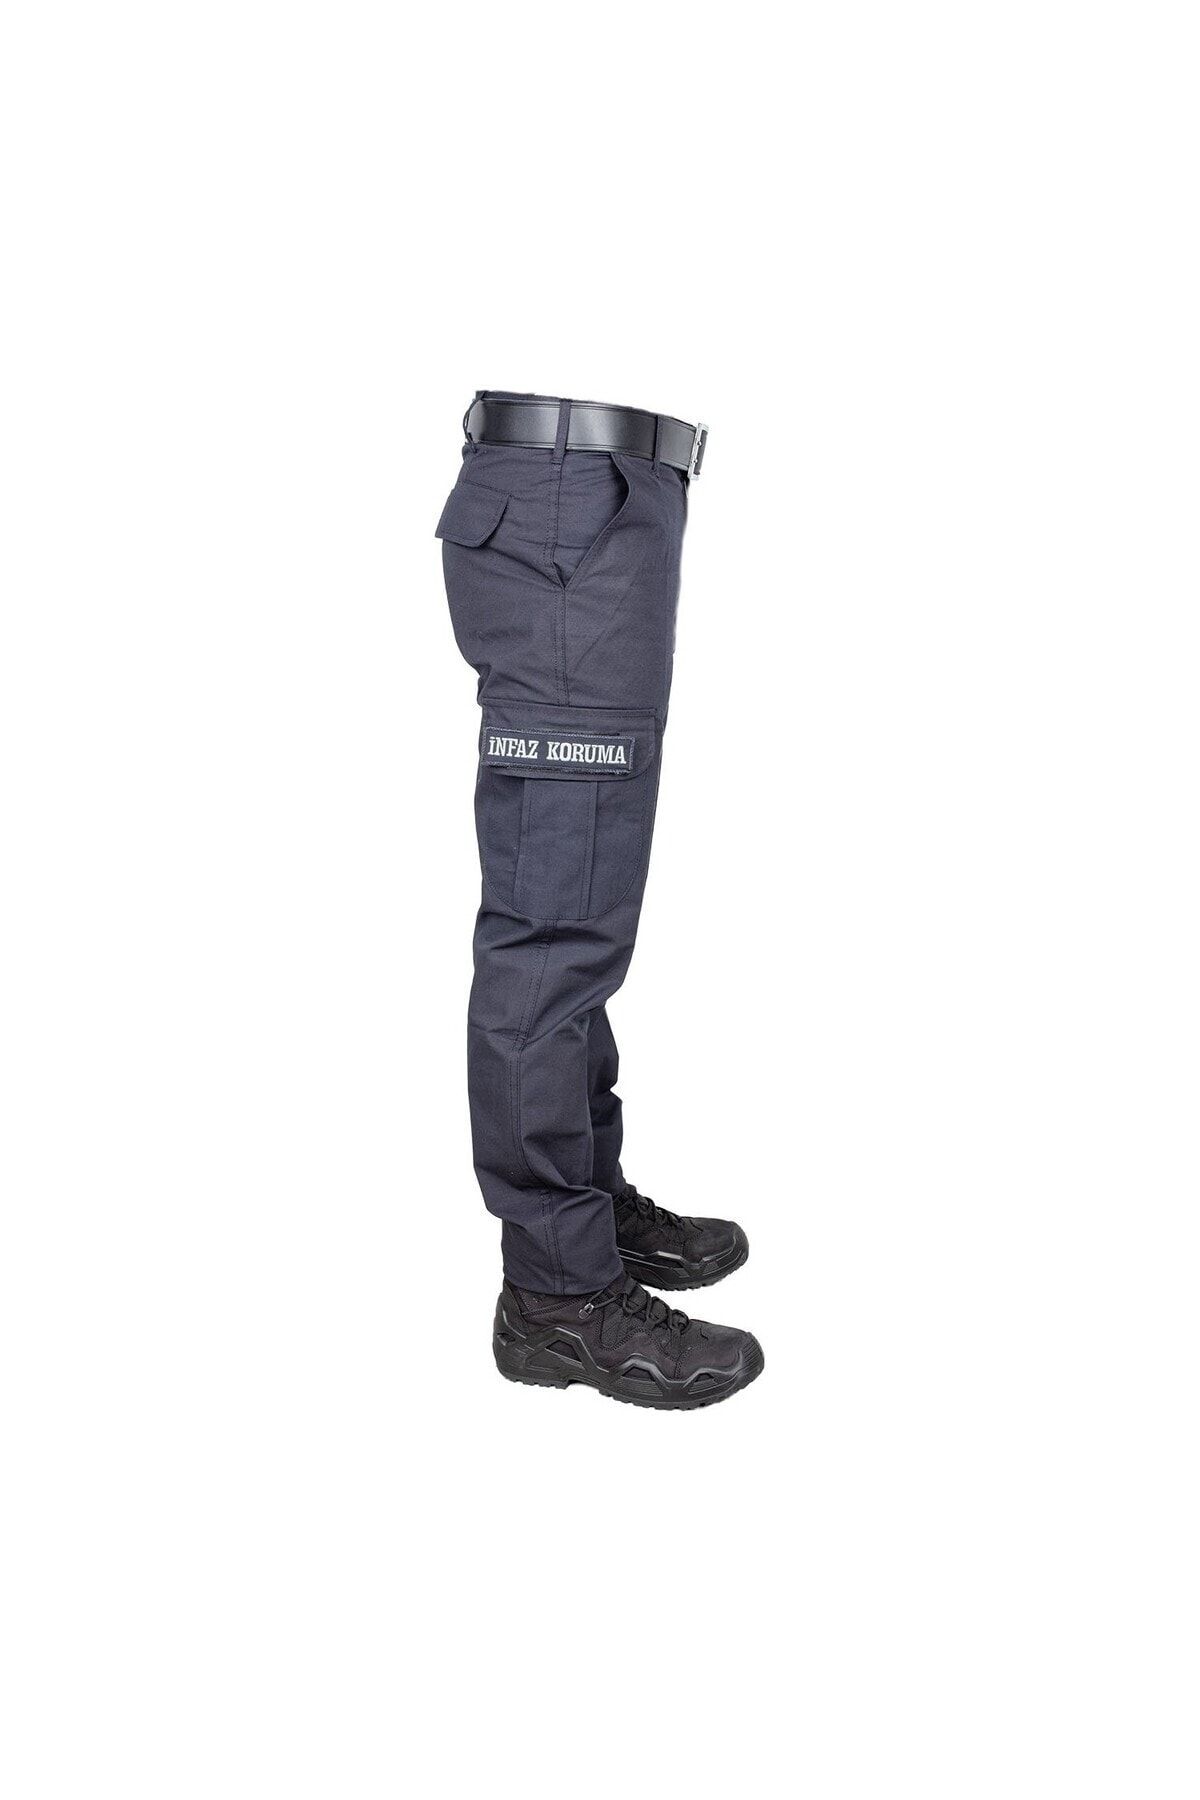 AskerVadisi İKM-CTE Pantolonu Lacivert Renk Cep Kapakları Yazılı